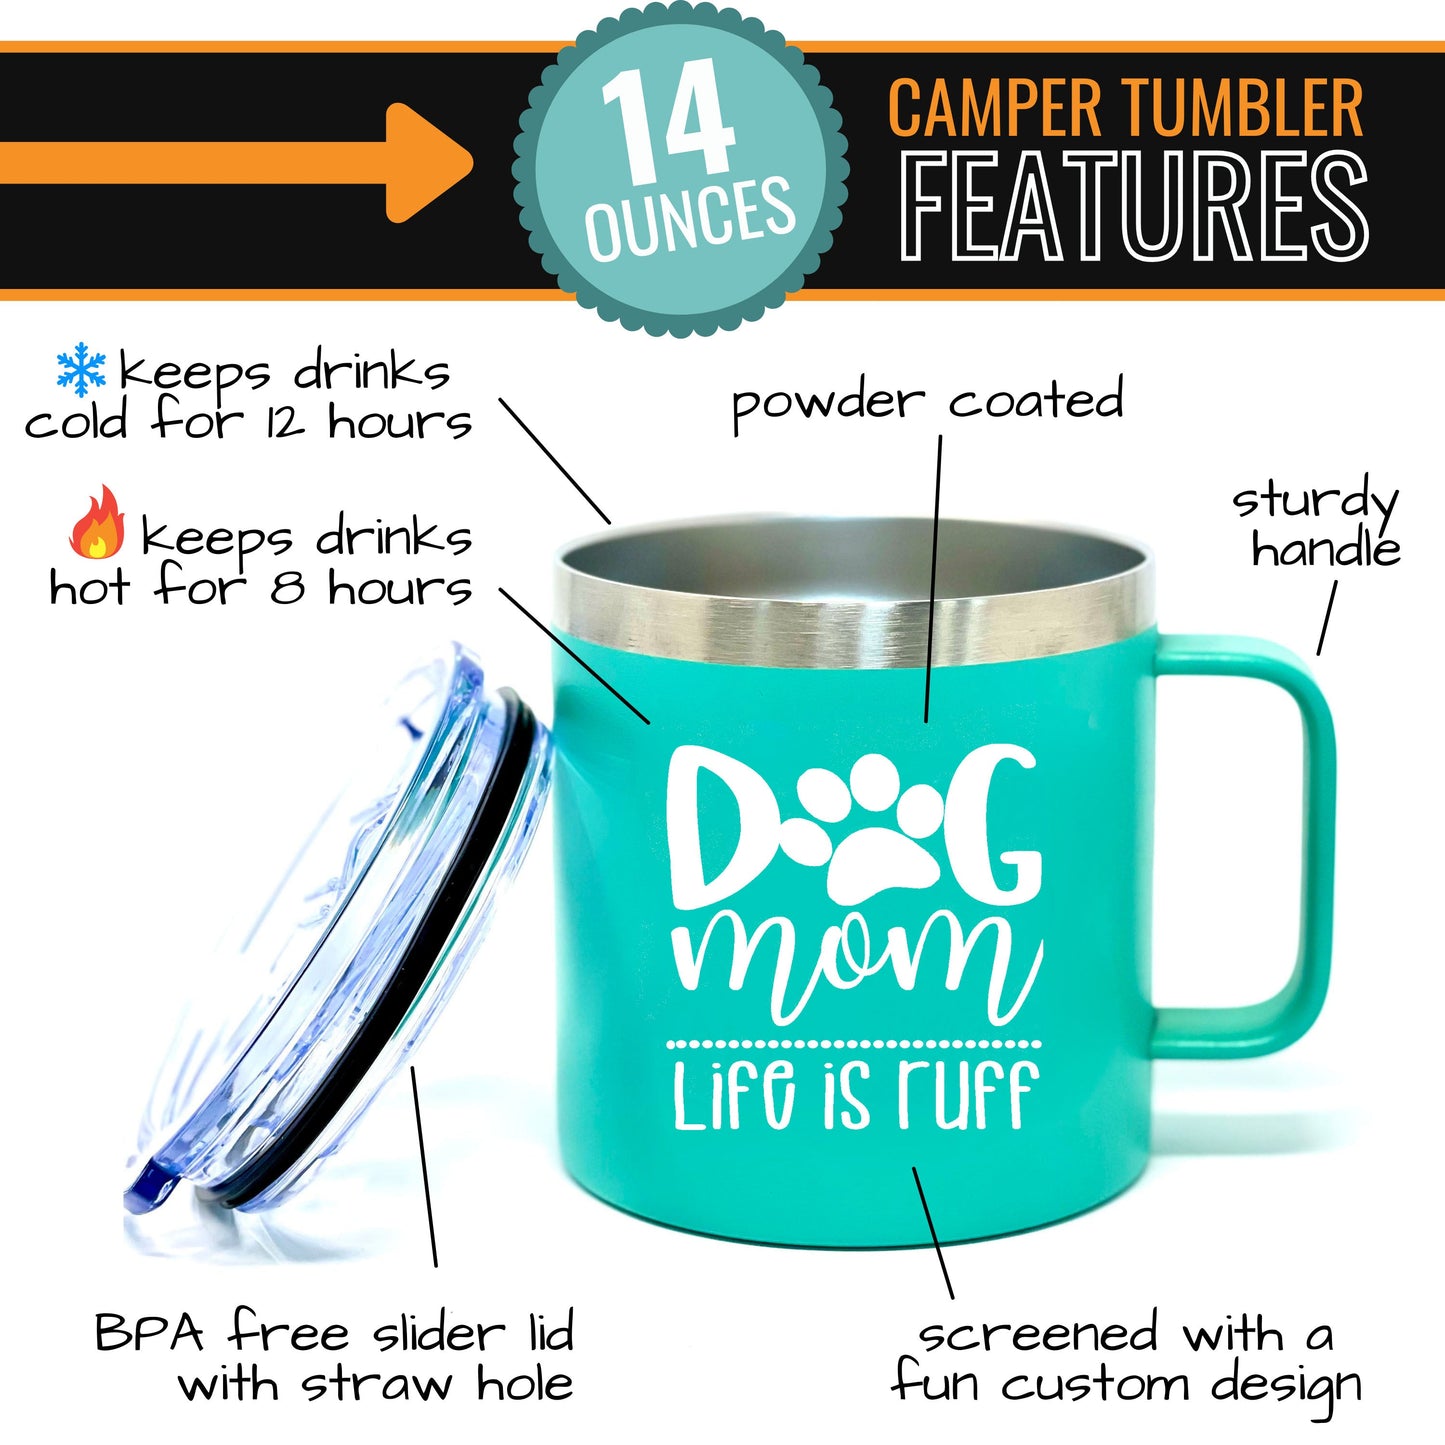 Dog Mom Teal 14 oz Camper Tumbler for Dog Lovers - Outlet Deal Texas